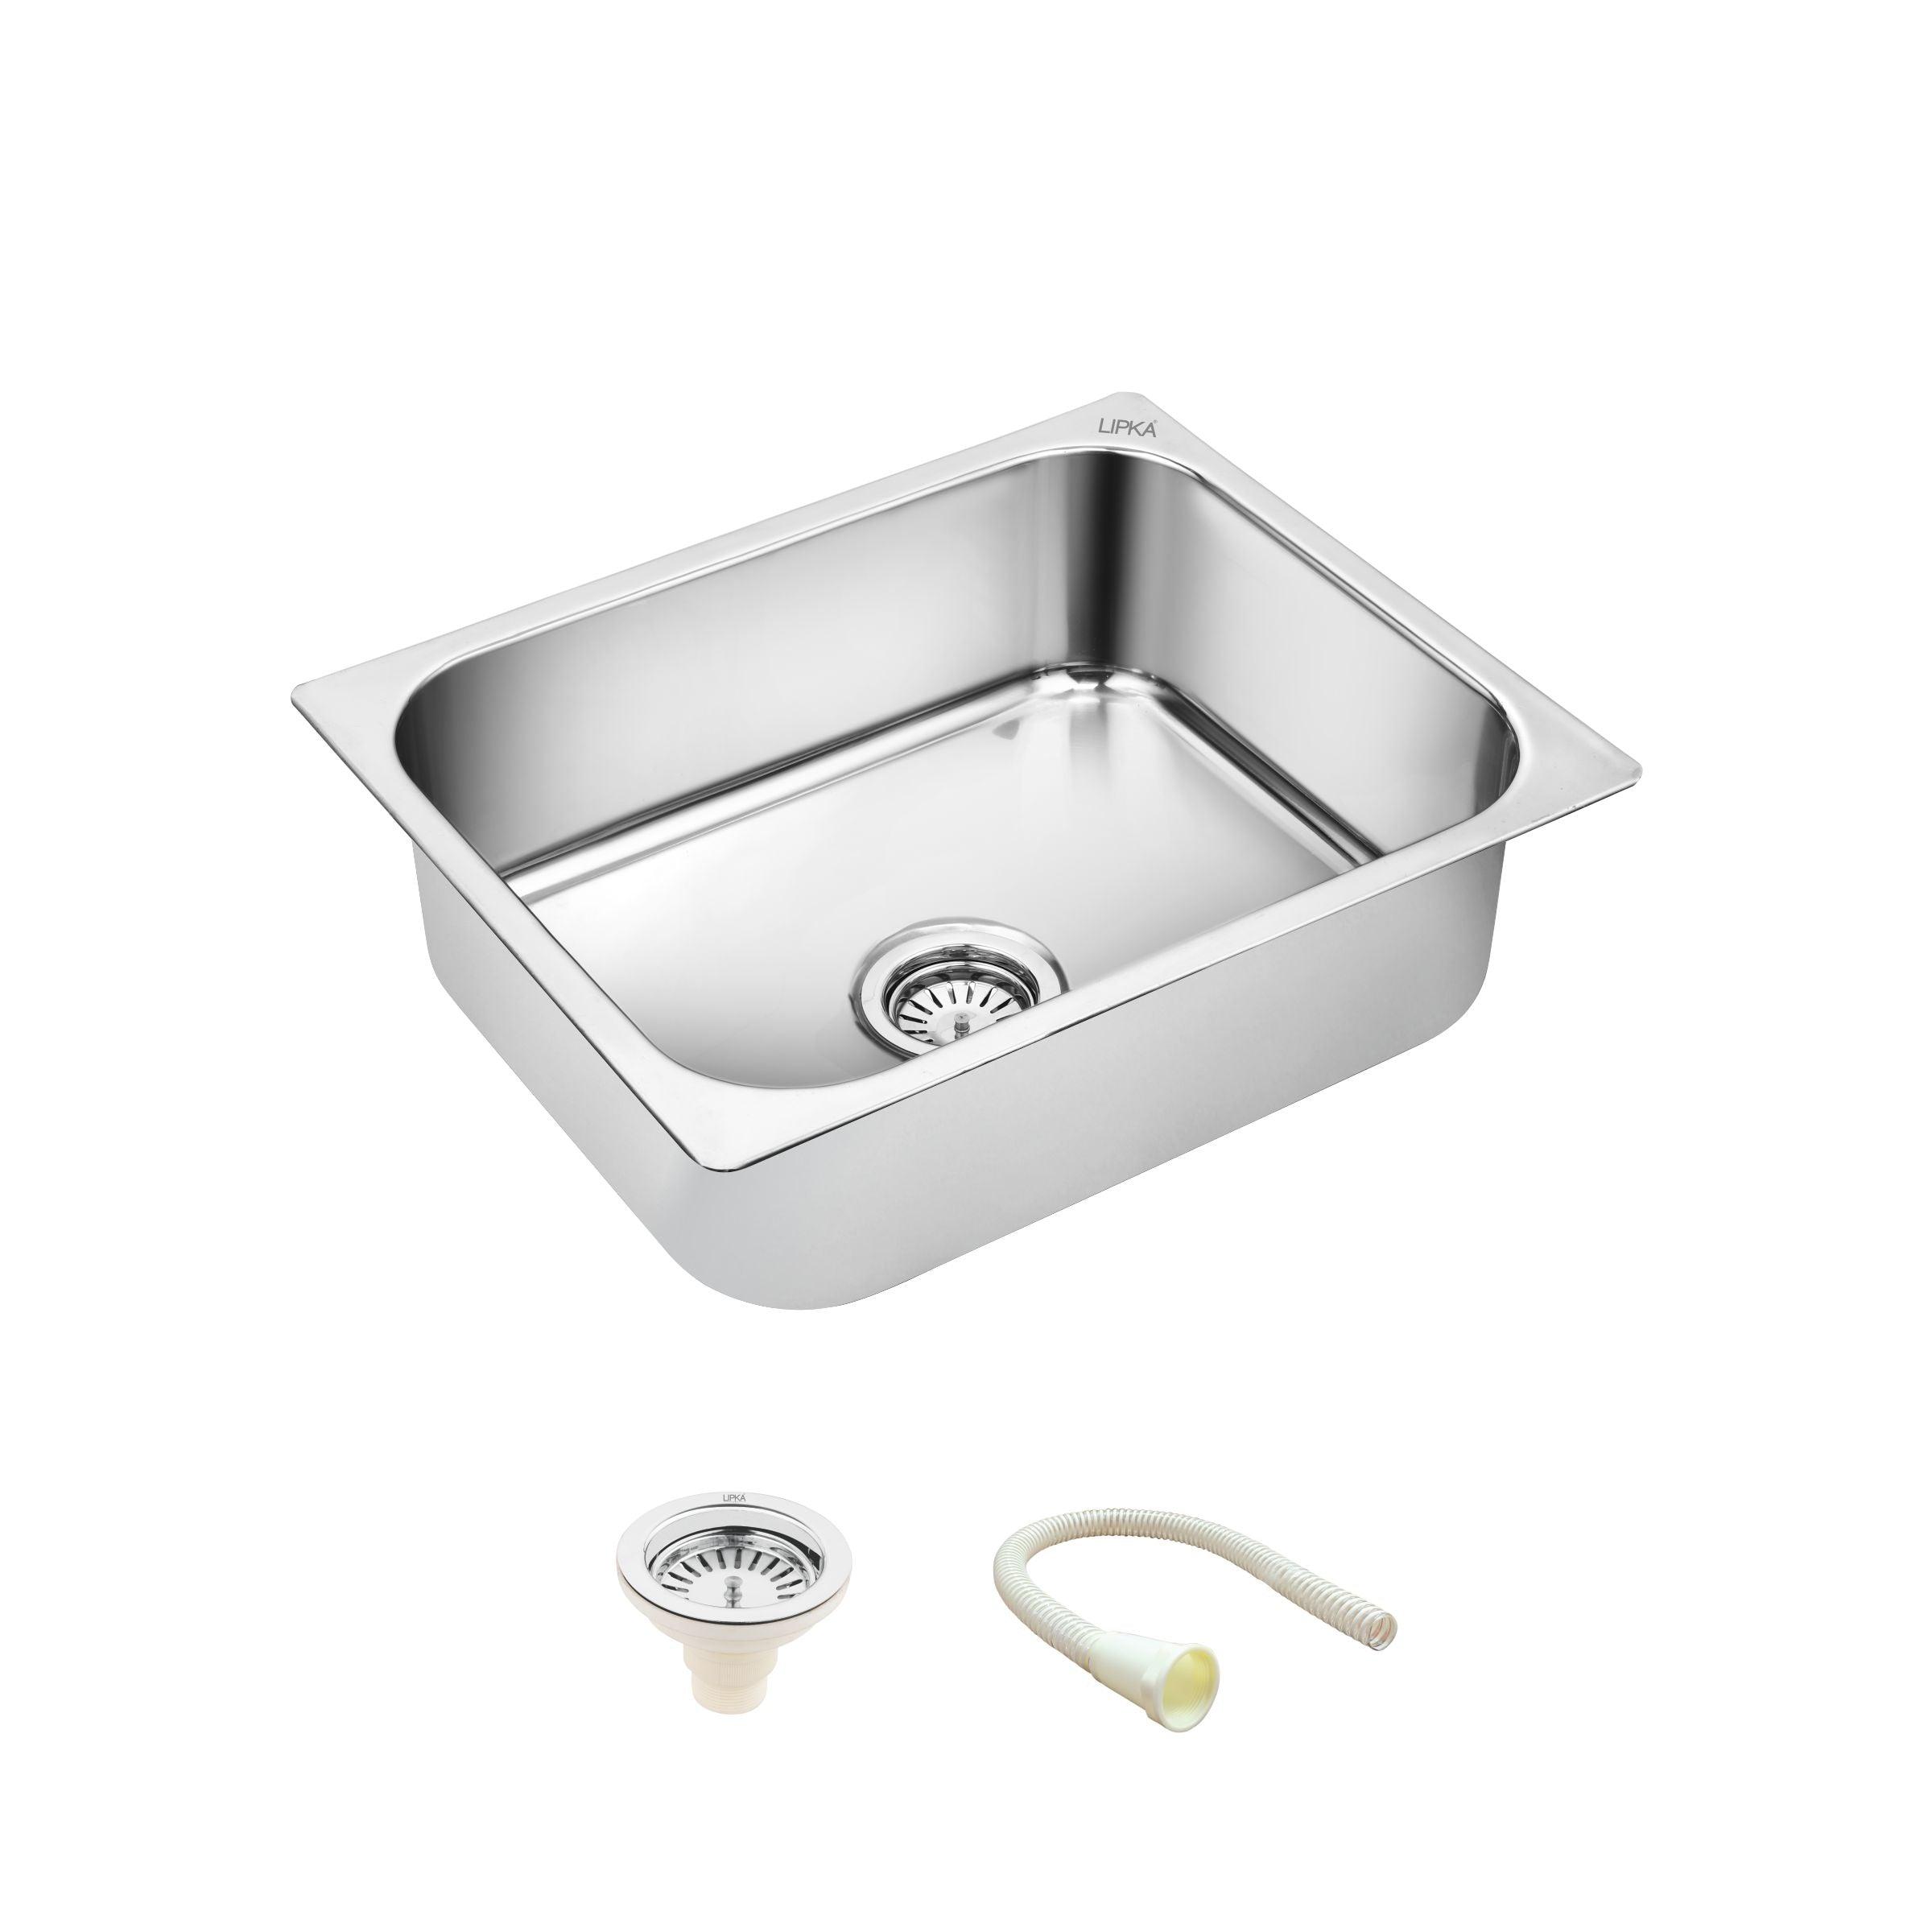 Square Single Bowl Kitchen Sink (24 x 18 x 9 Inches) - LIPKA - Lipka Home